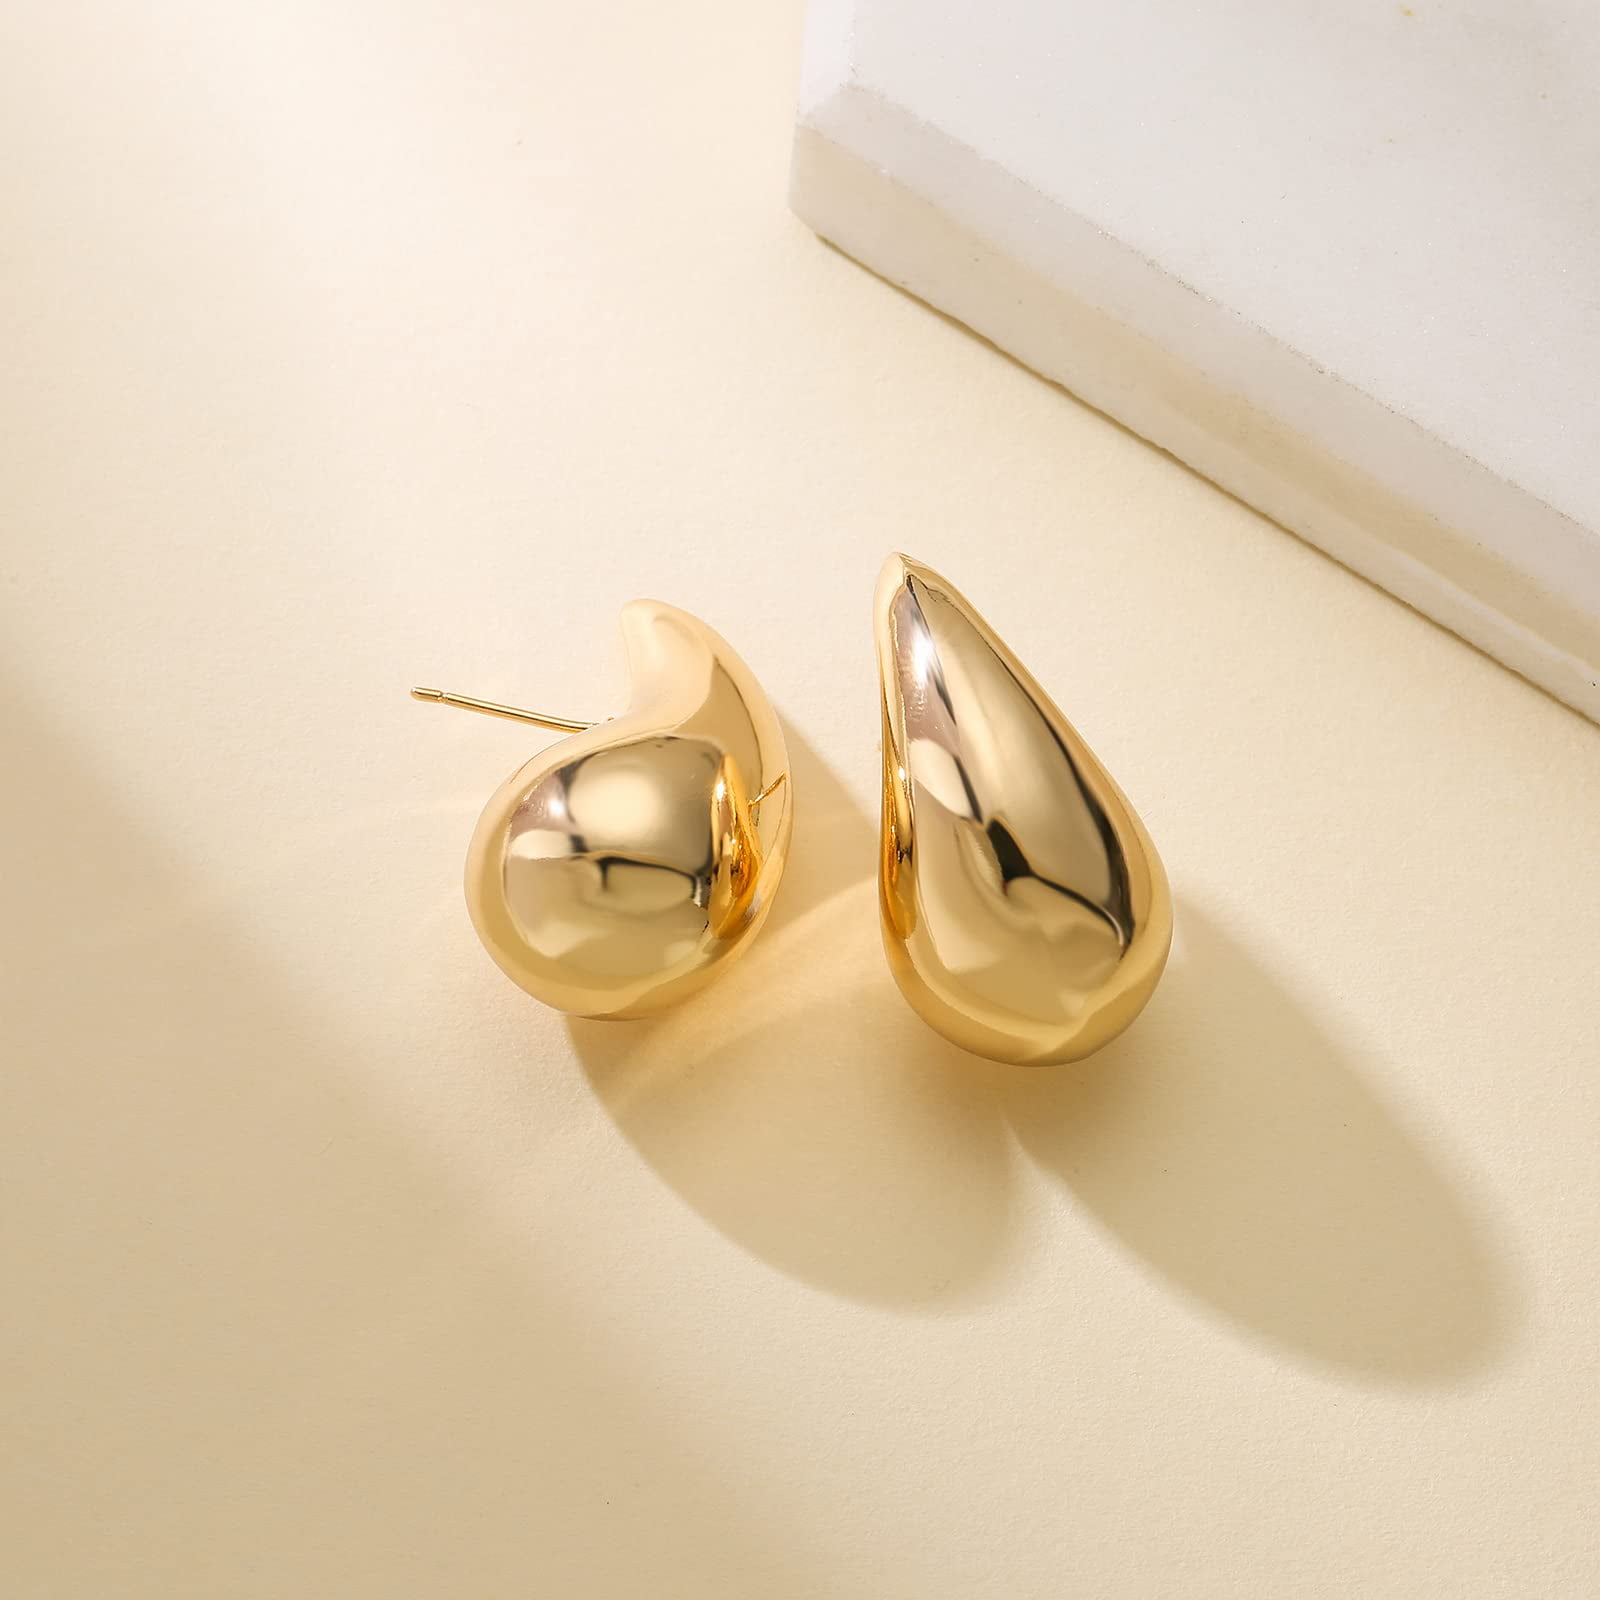 Amazon.com: Jumwrit Starburst Earrings Spike Ear Jacket Earrings Rhinestone  Dangle Earrings Chic Stud Earrings Front Back Cuff Earrings for Women and  Girls(Gold) : Clothing, Shoes & Jewelry